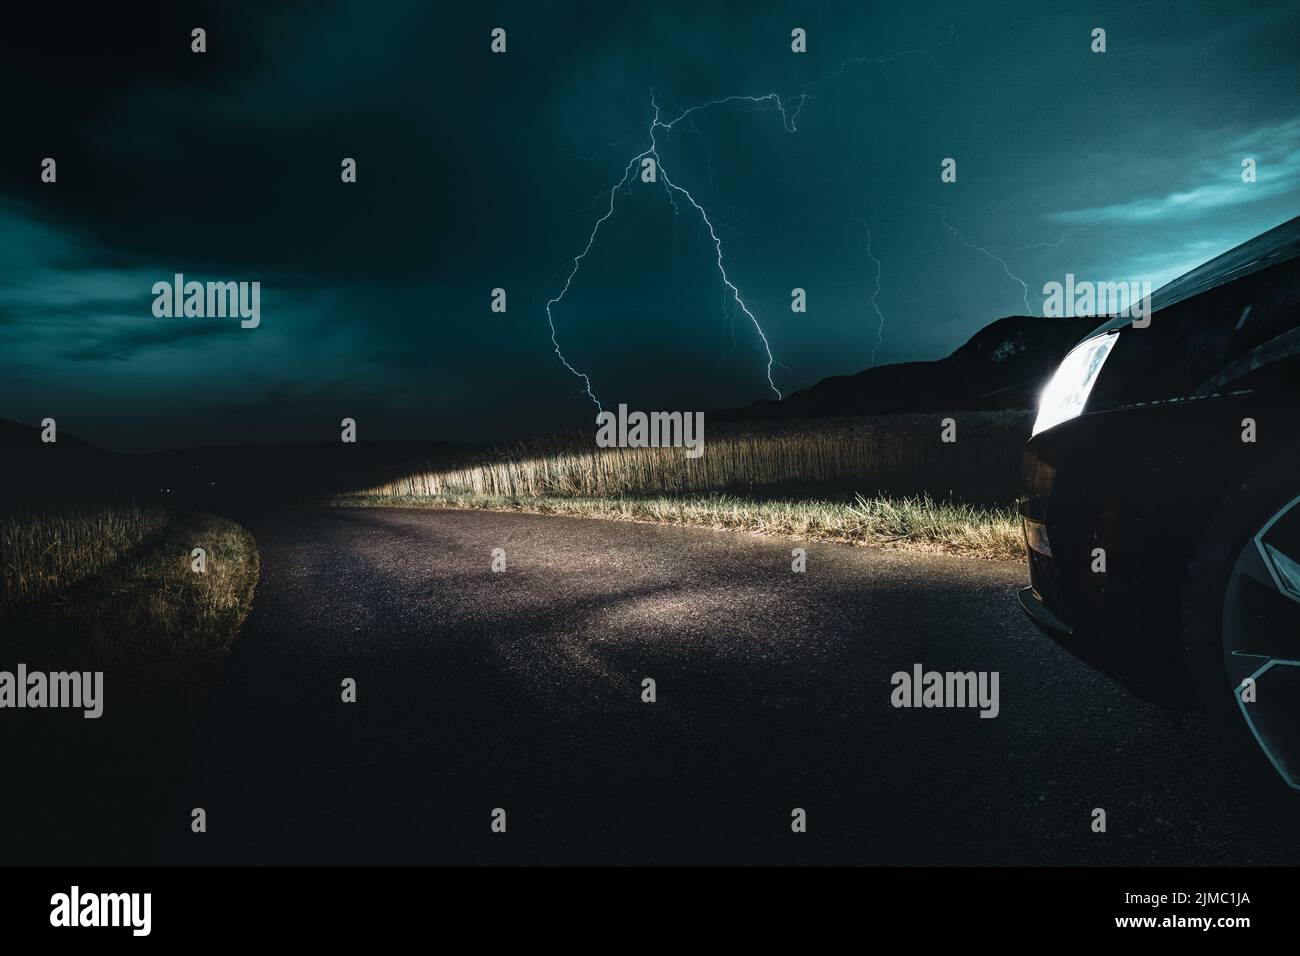 Incredibile foto di tempesta del tempo con Big Bright Lightning Bolt Strike proveniente da Dark Moody Sky Foto Stock